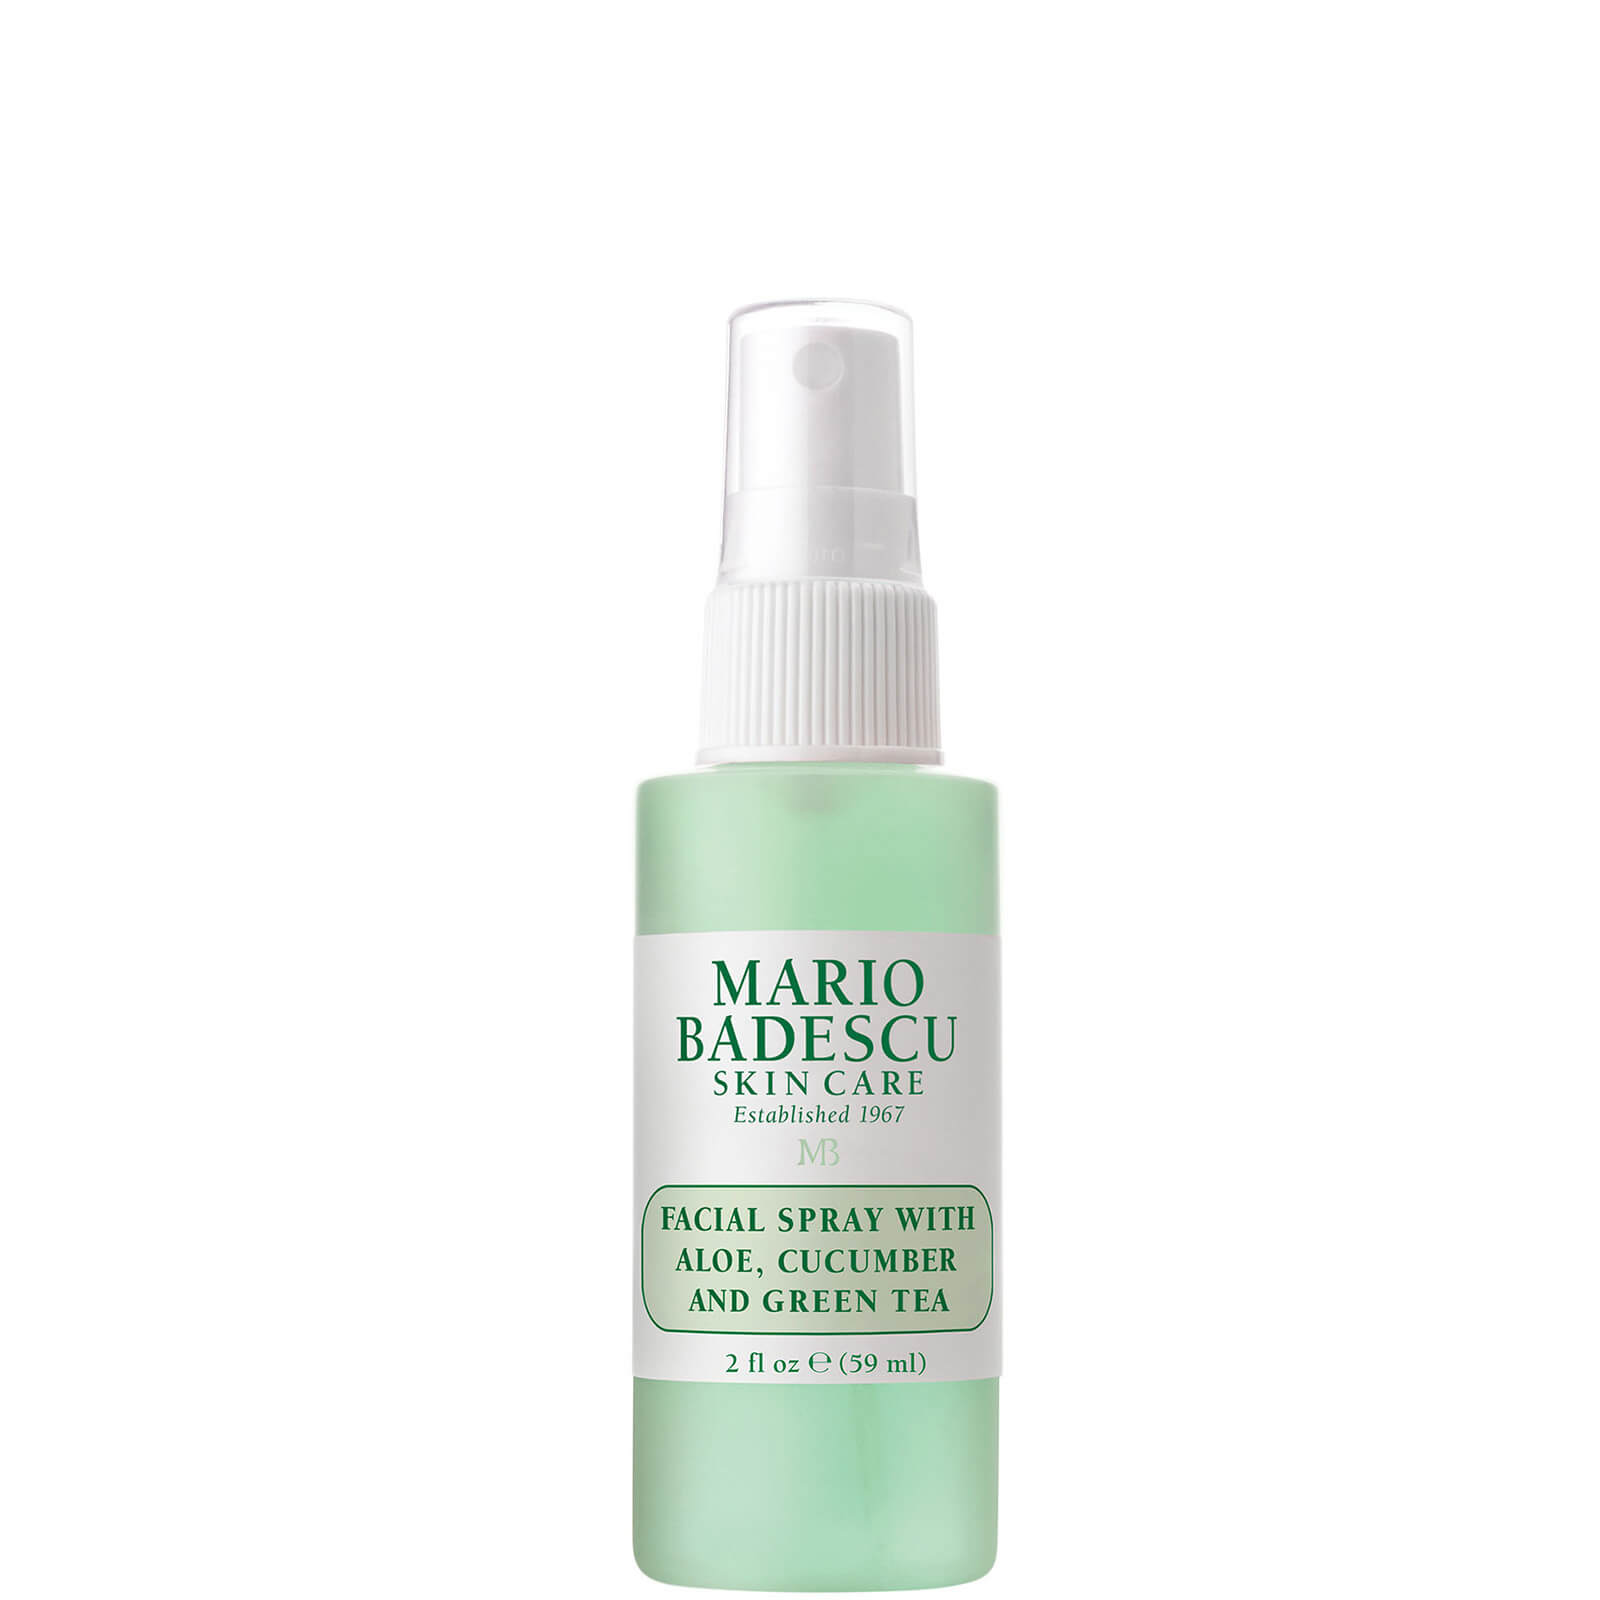 Photos - Facial / Body Cleansing Product Mario Badescu Facial Spray With Aloe, Cucumber And Green Tea - 59ml